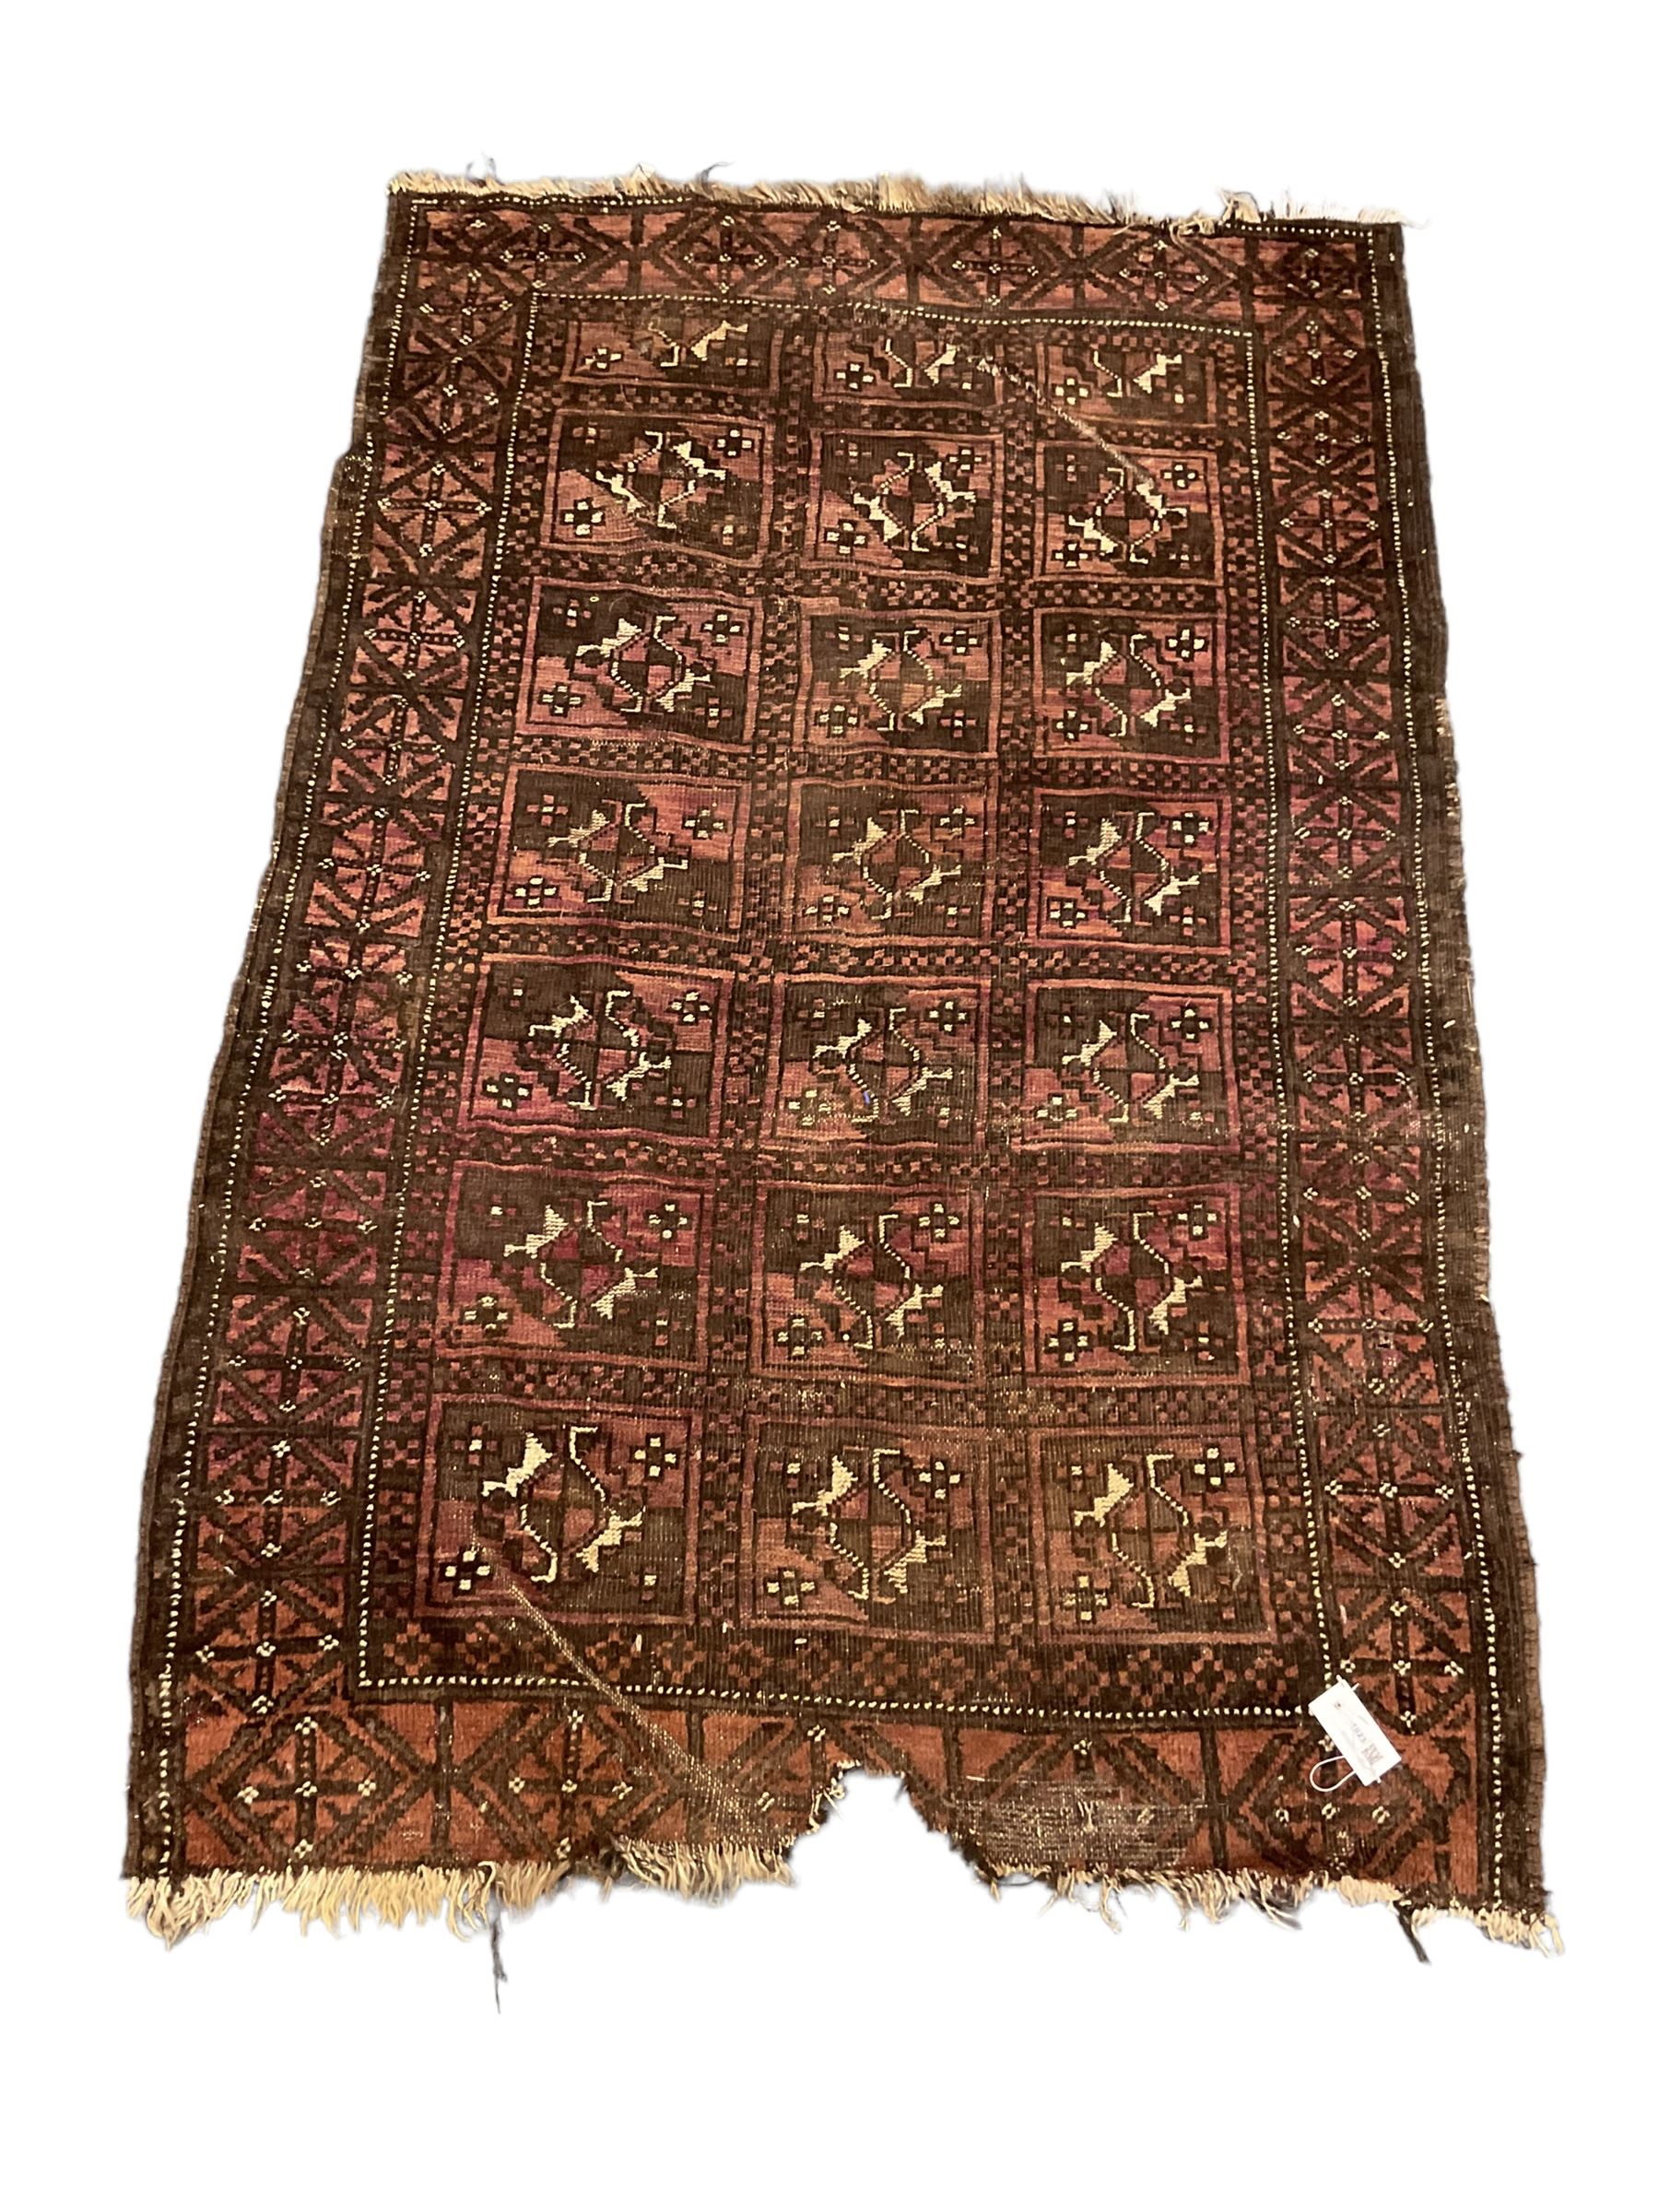 Afghan rug - Image 4 of 5